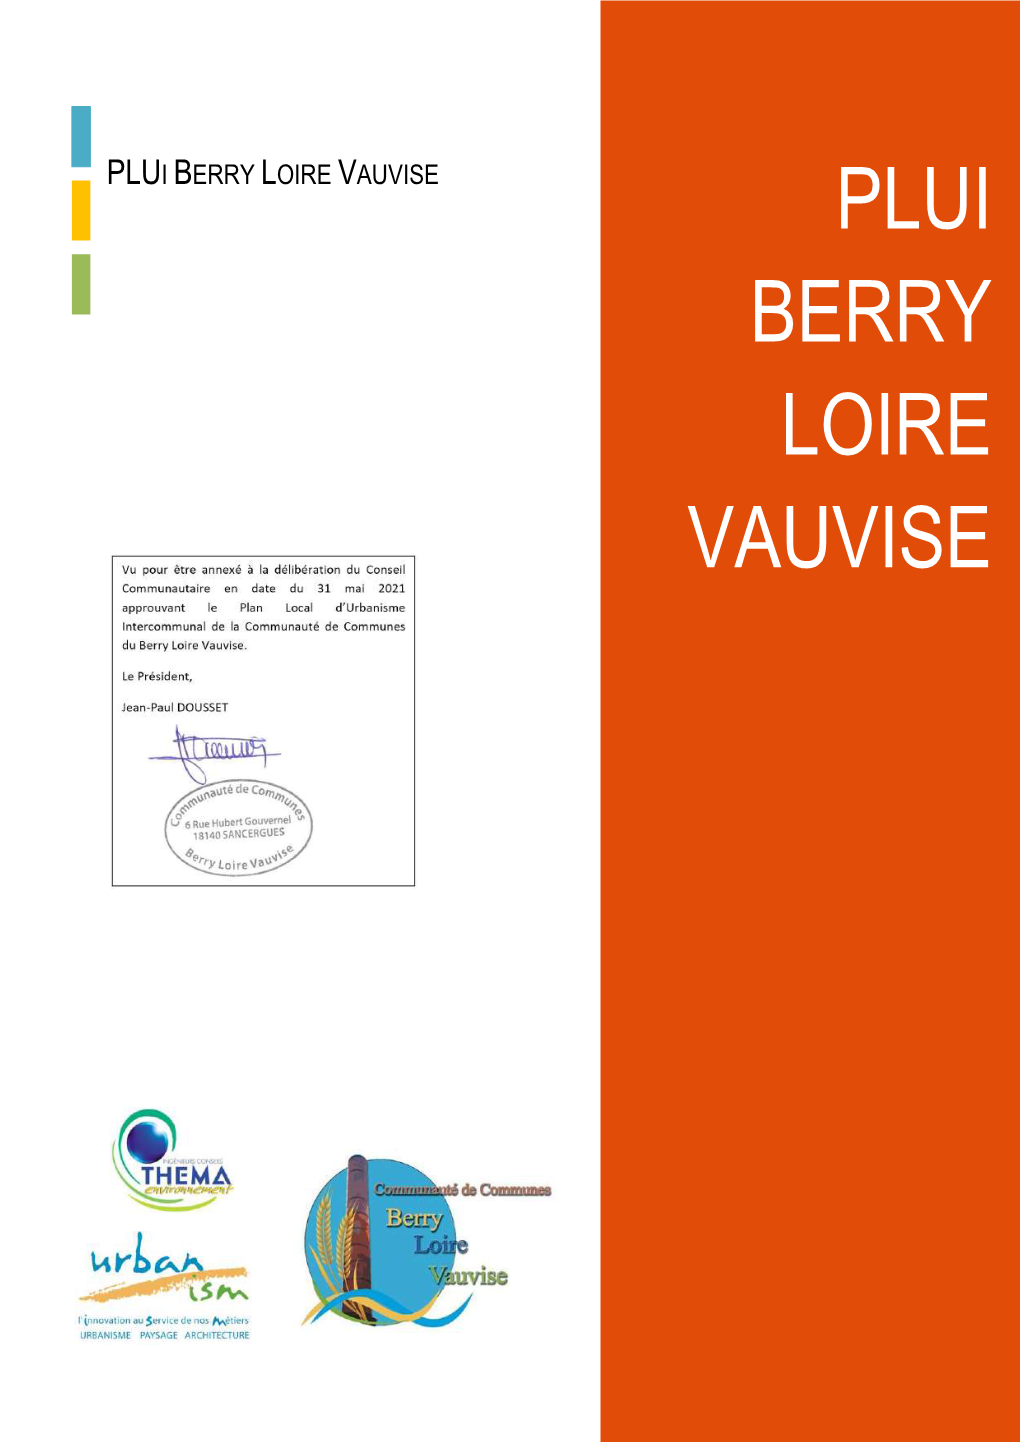 Plui Berry Loire Vauvise Plui Berry Loire Vauvise